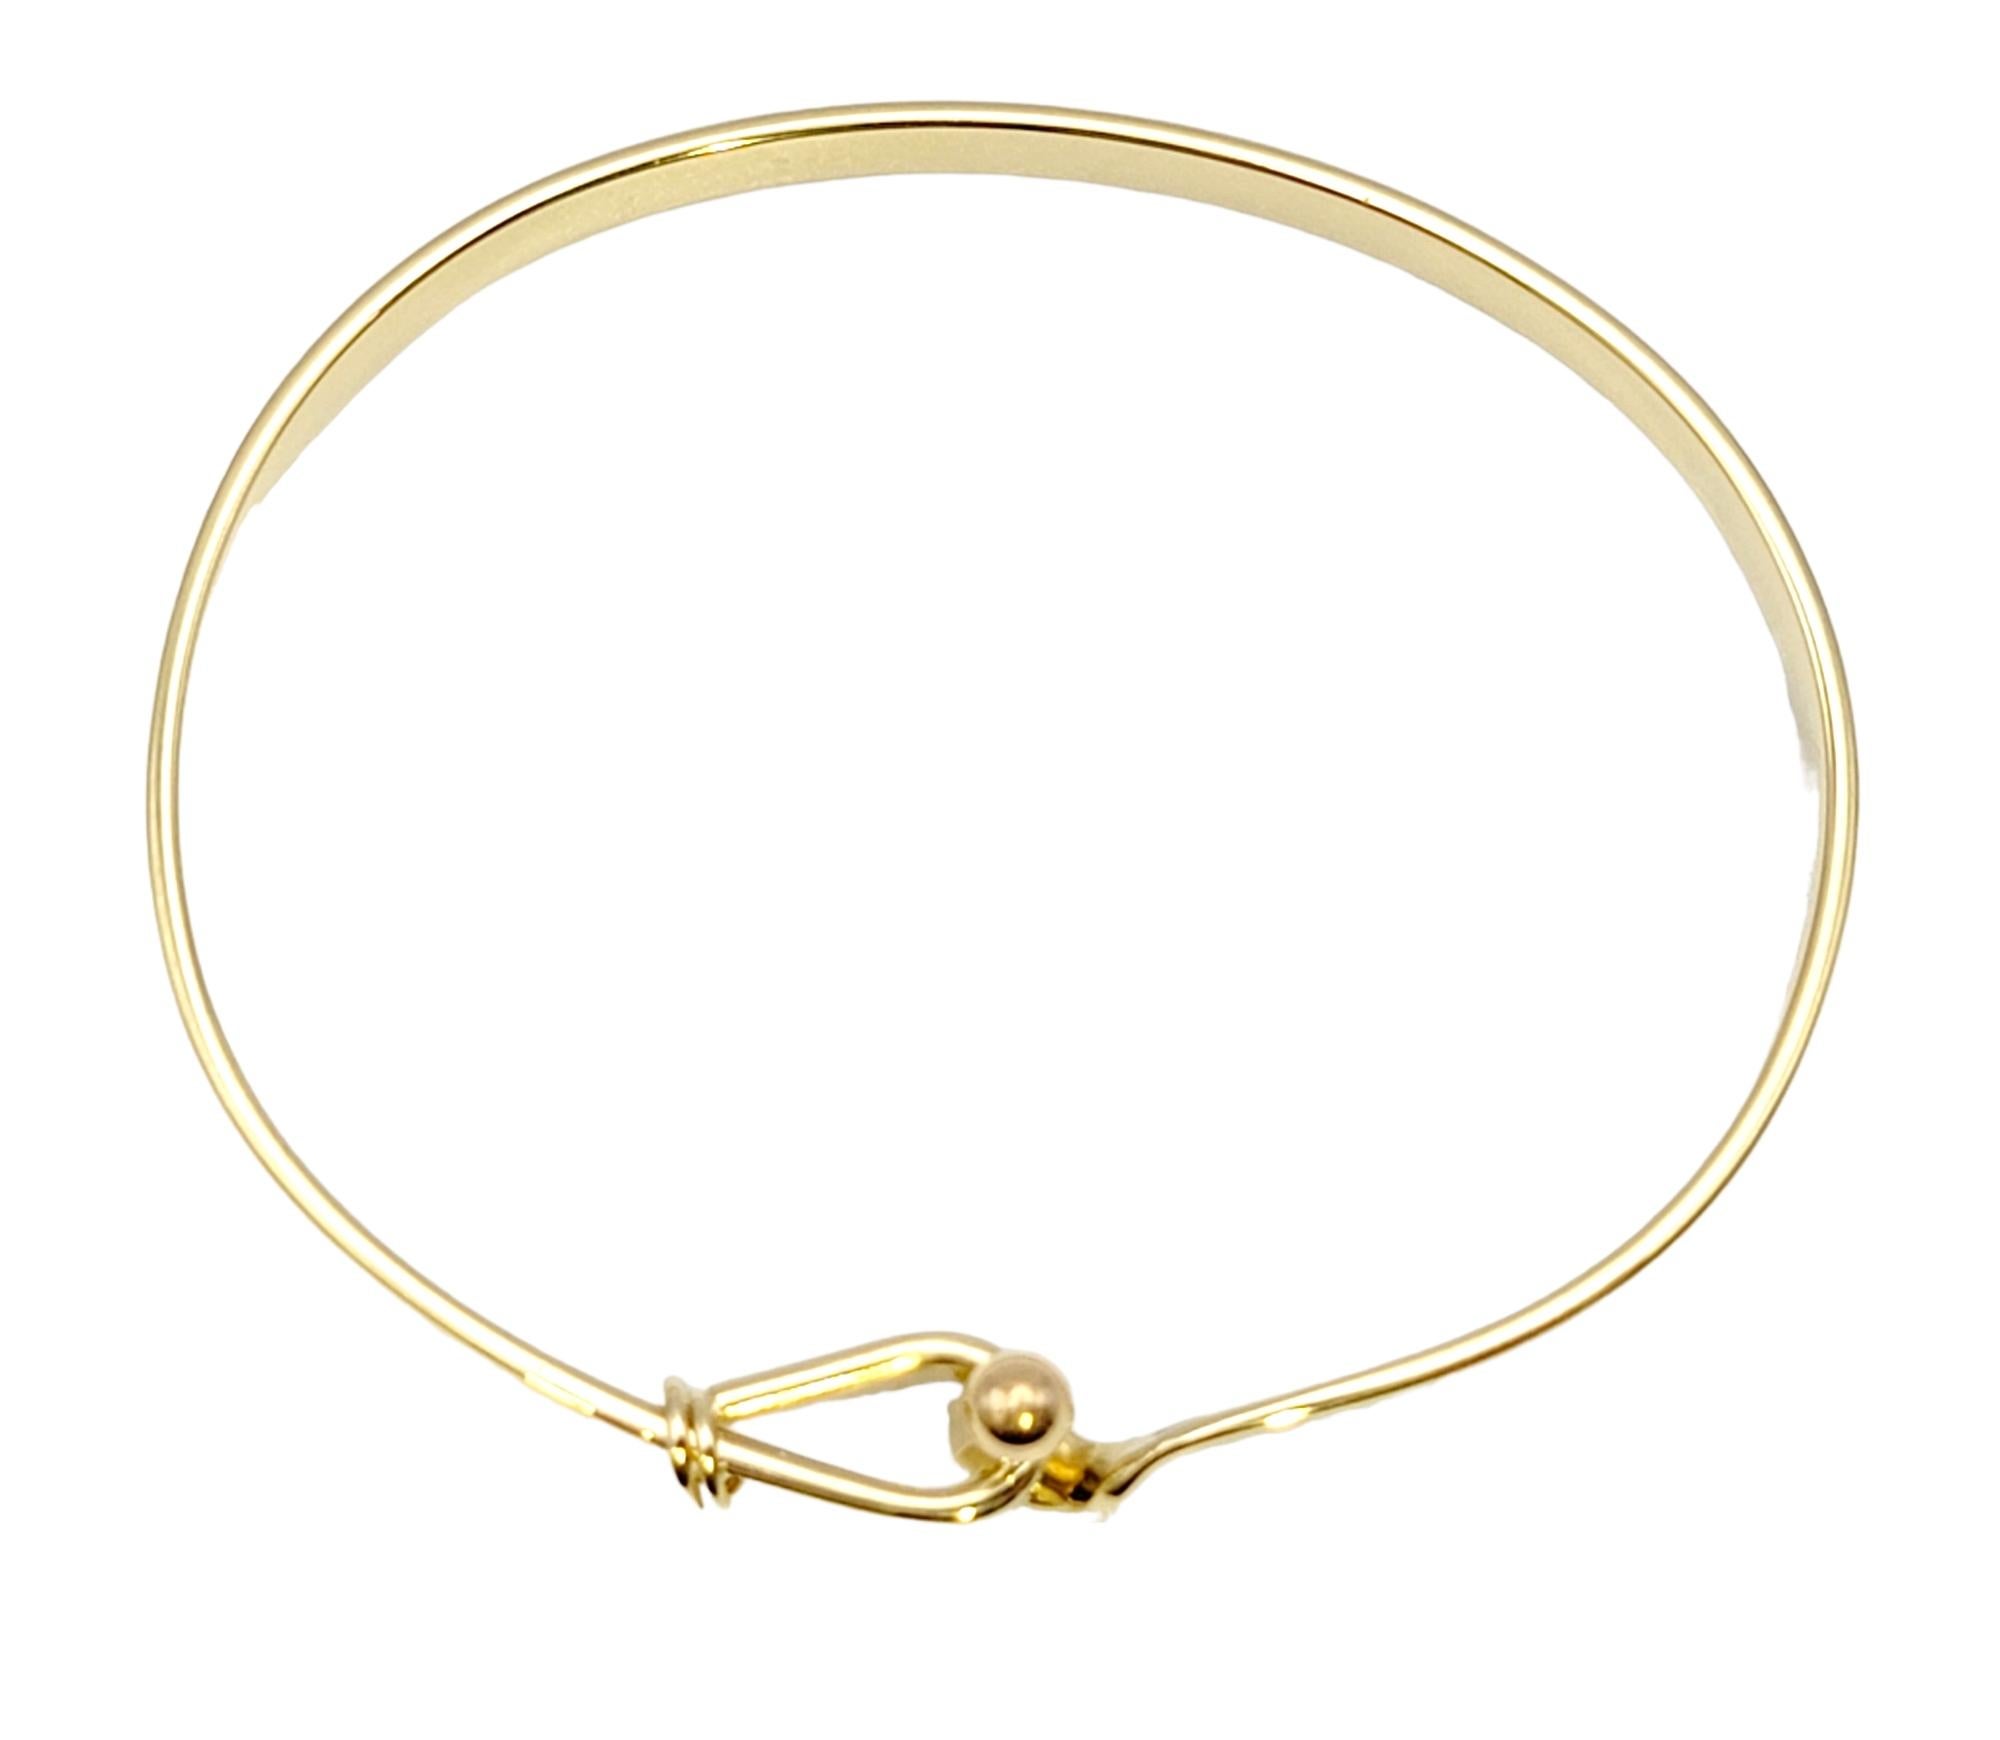 Tiffany & Co. Polished 18 Karat Yellow Gold Hook and Eye Bangle Bracelet 2